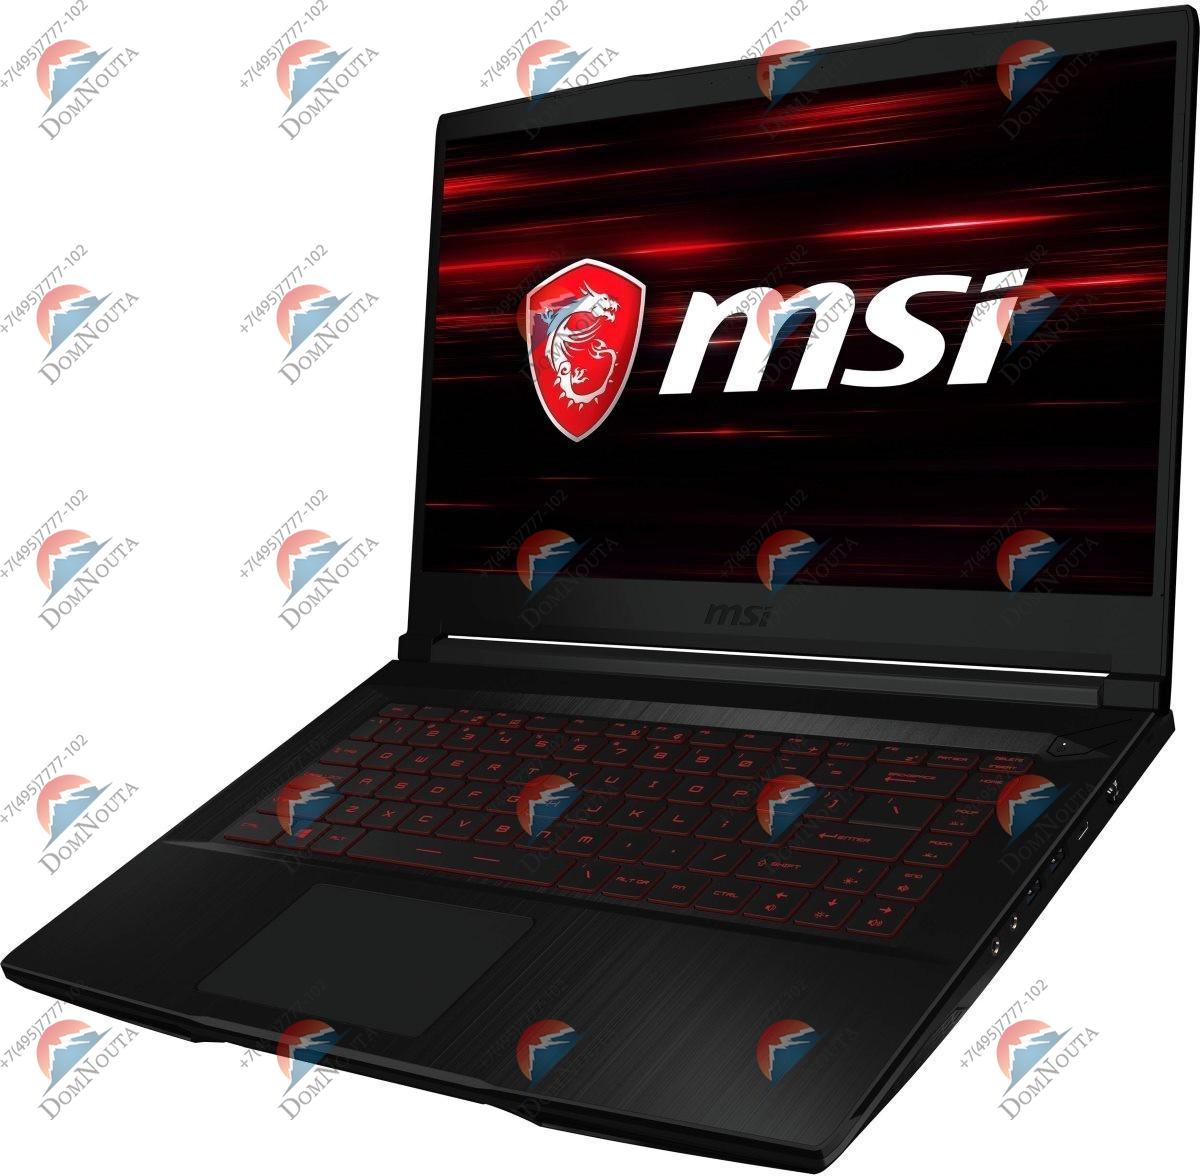 Ноутбук MSI GF63 10UD-416RU Thin